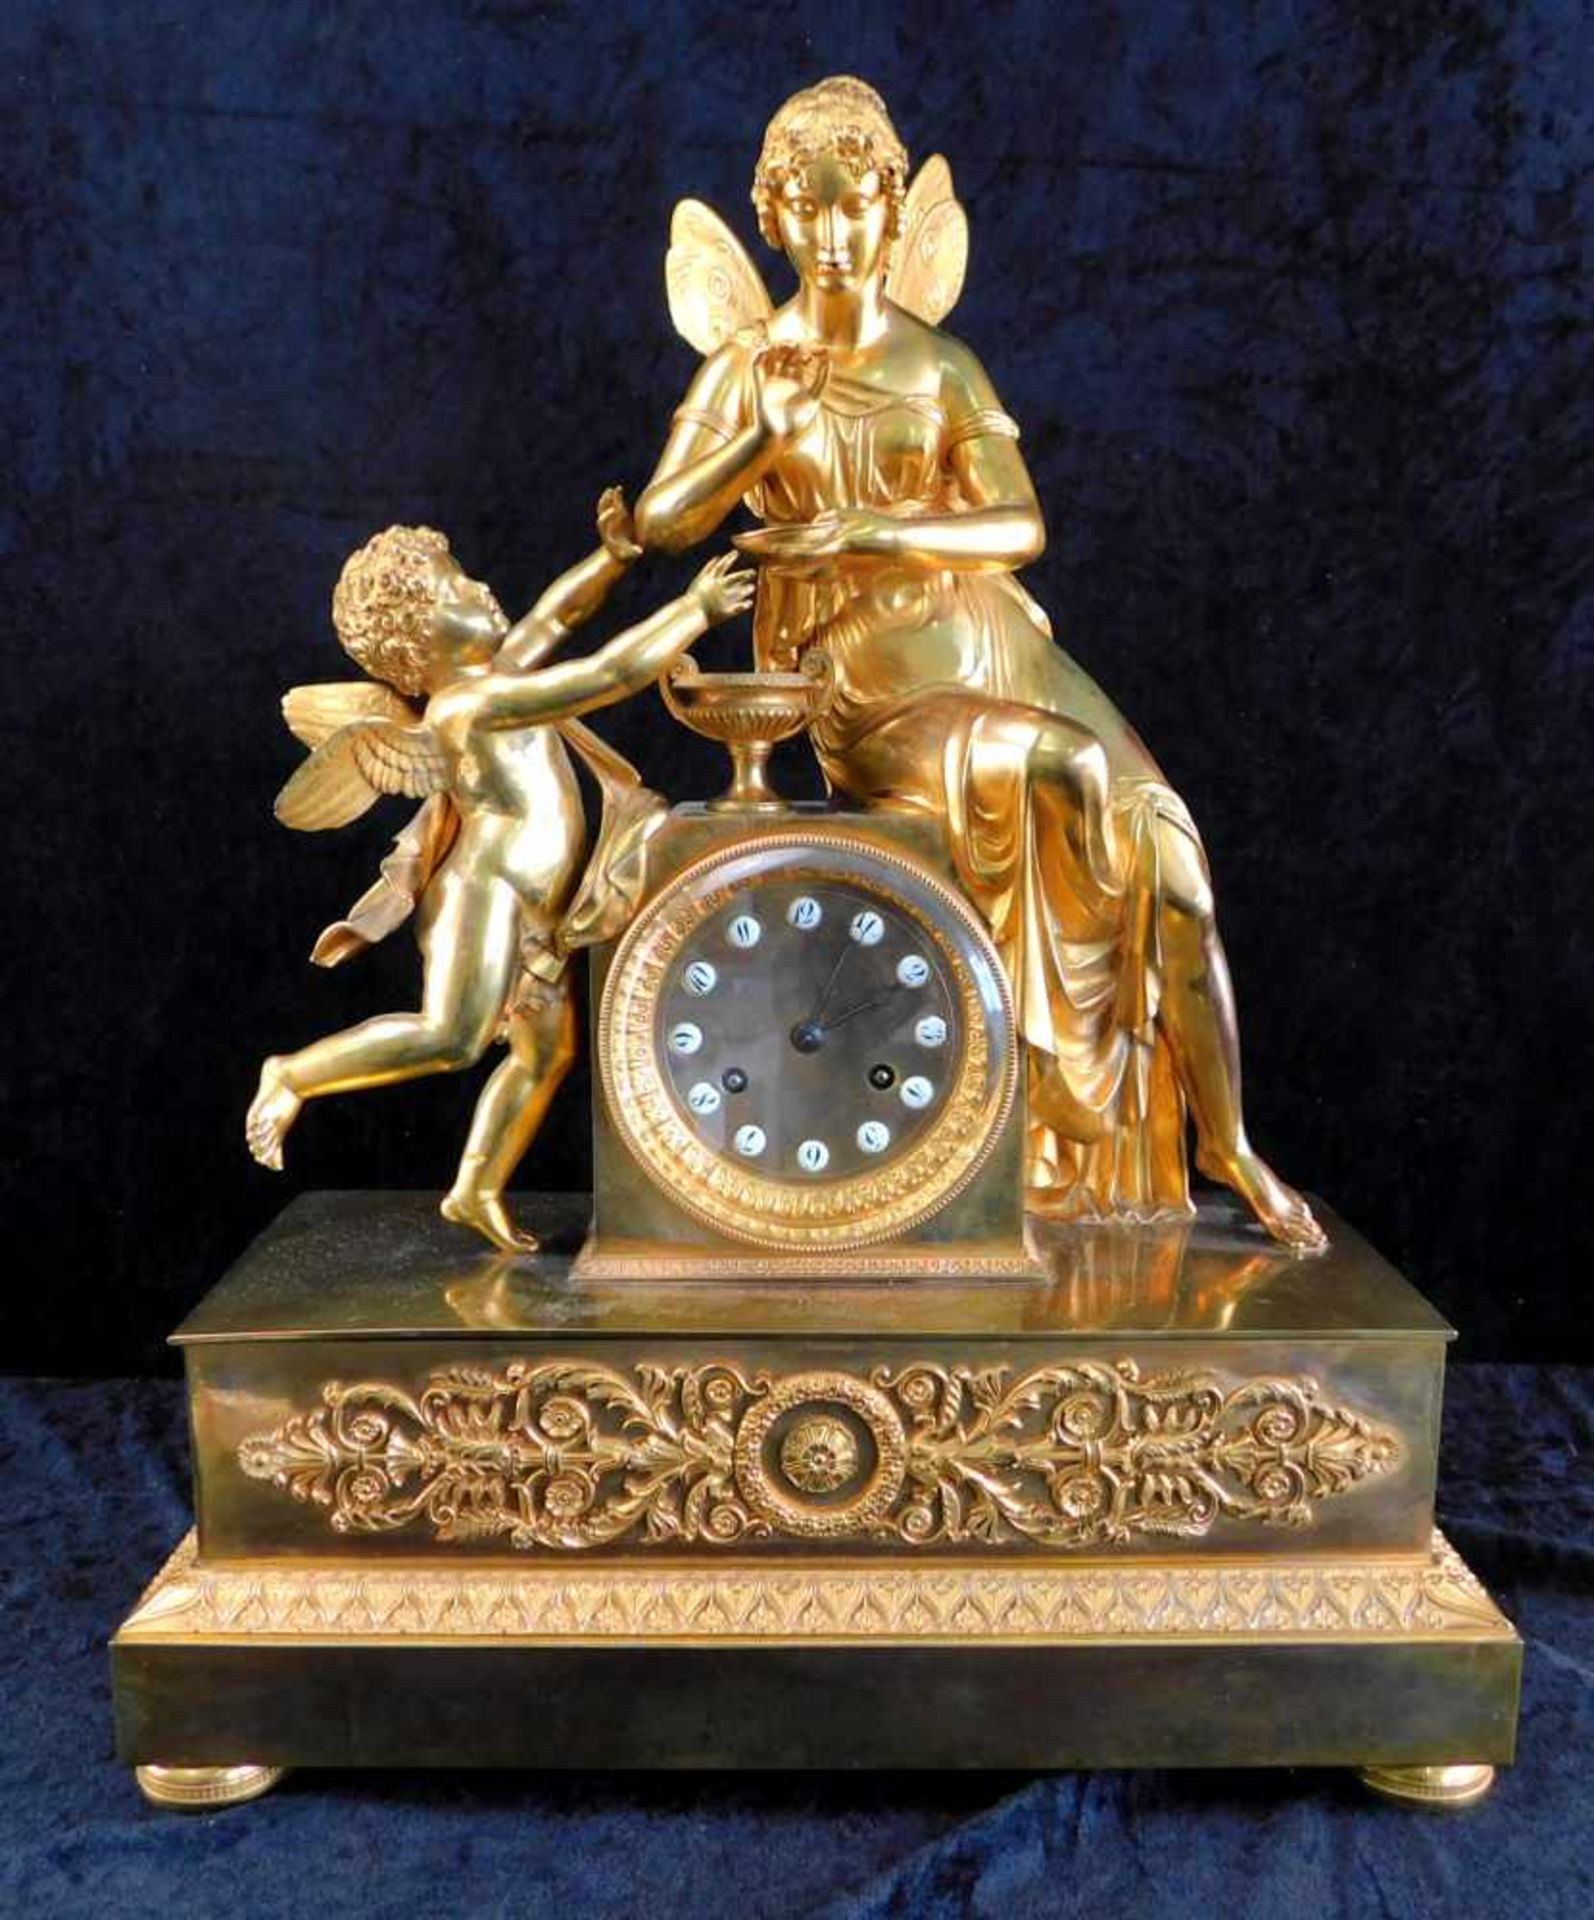 Große Kaminuhr feuervergoldet, französisch um 1790, Fadenaufhängung, Göttin mit Putto auf